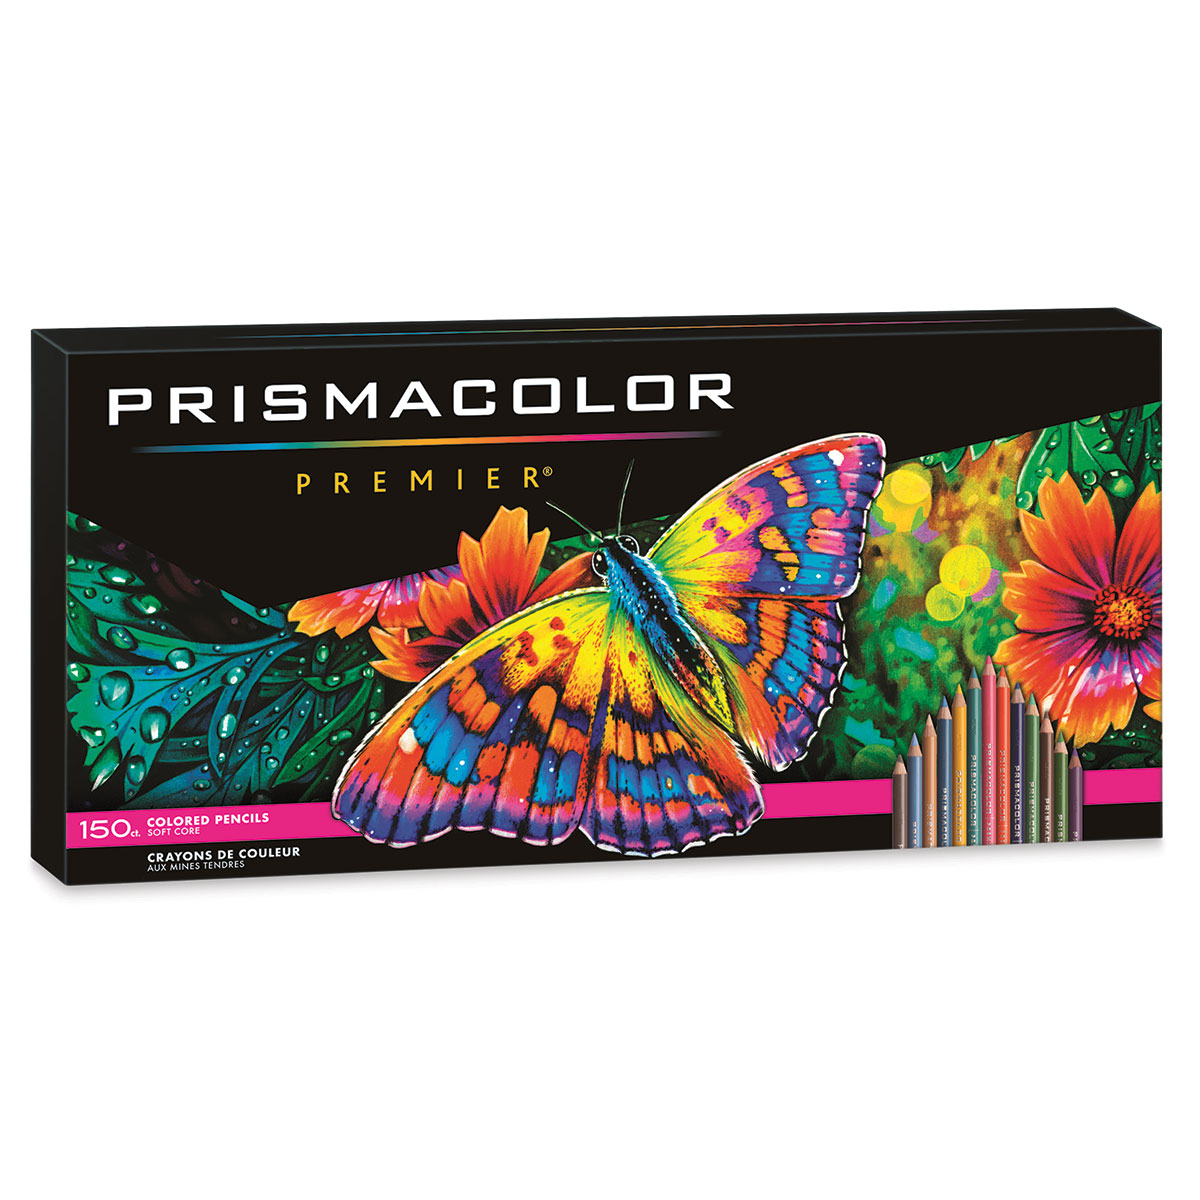 Prismacolor Premier Colored Pencils Complete Set of 150 Assorted Colors 